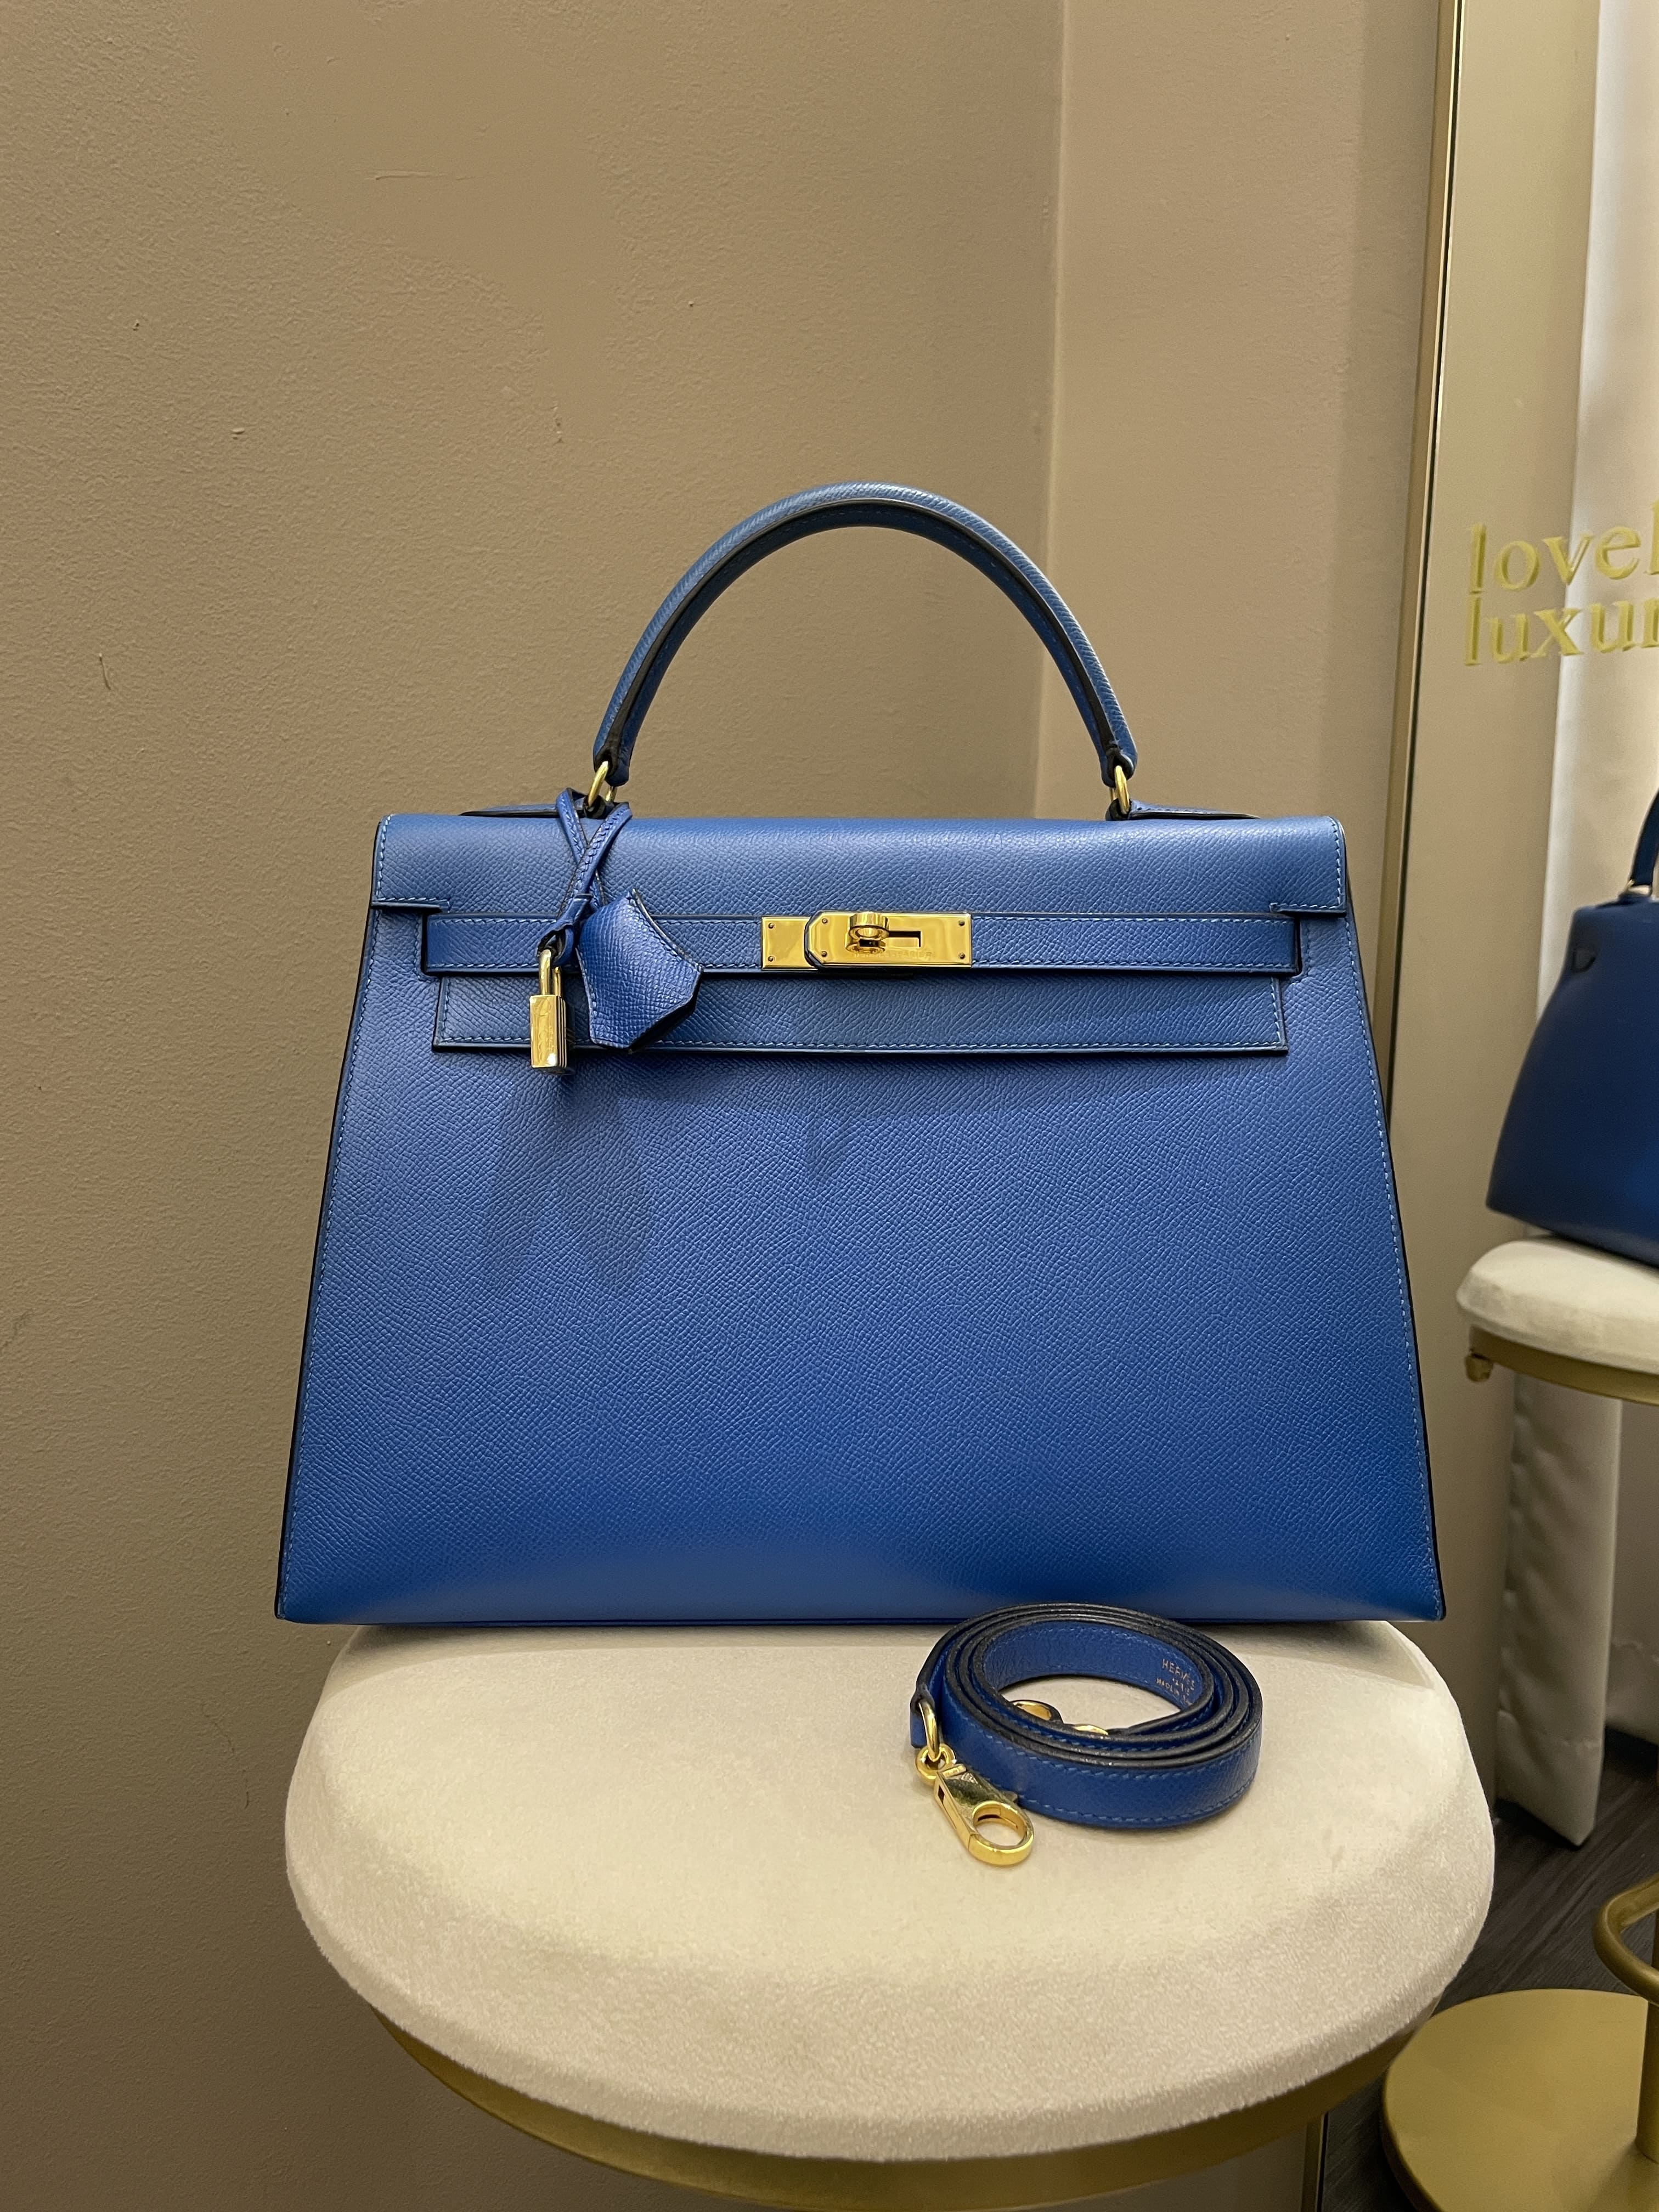 Hermès - Kelly 32 - Navy Blue Epsom - Pre-Loved